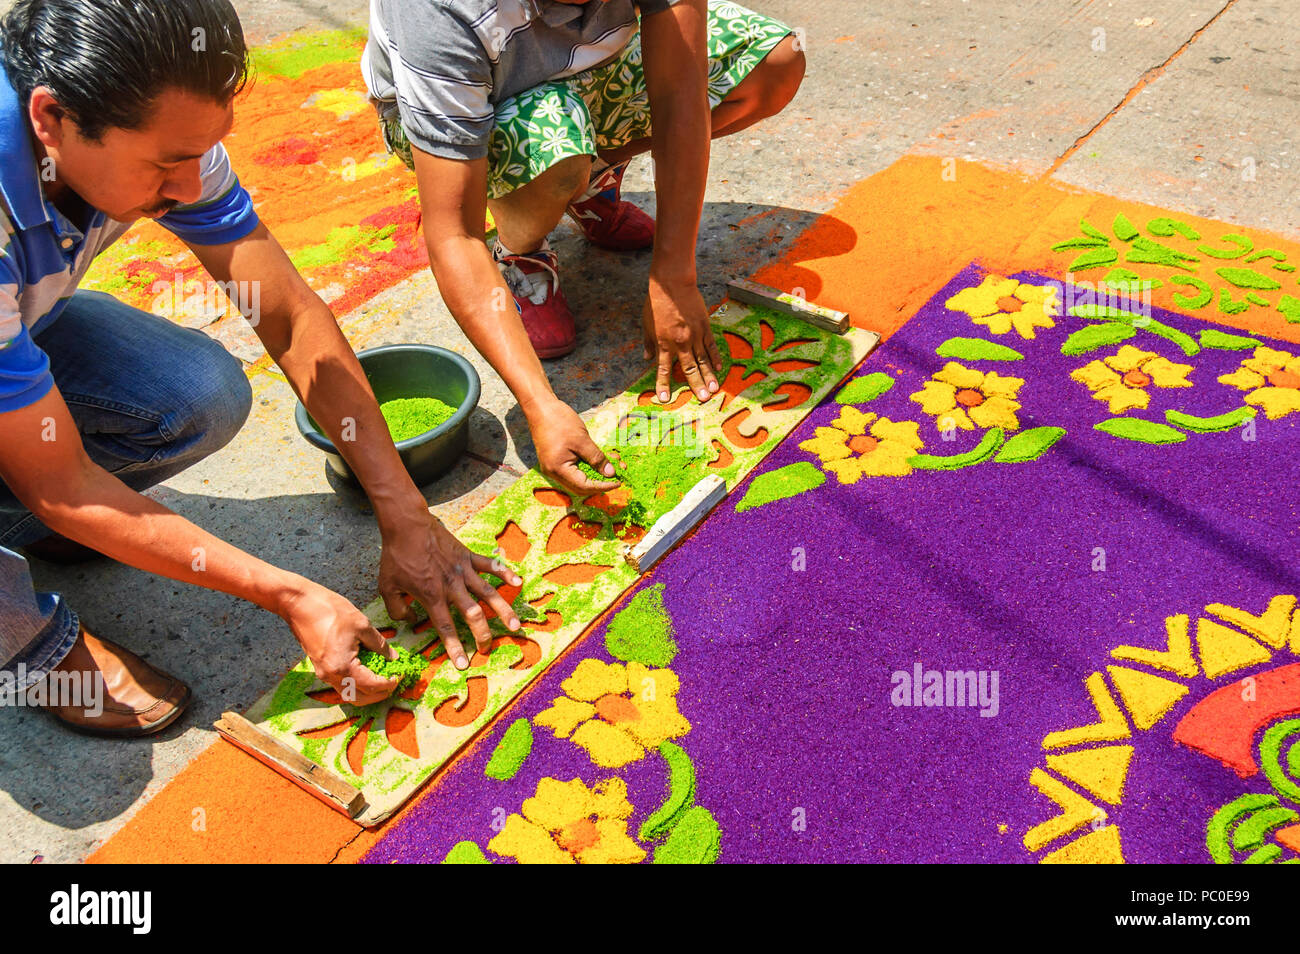 Antigua, Guatemala - April 2, 2015: Einheimische gefärbte Sägespäne Gründonnerstag Teppich in der Stadt machen, mit dem berühmtesten Feierlichkeiten zur Karwoche in Lateinamerika. Stockfoto